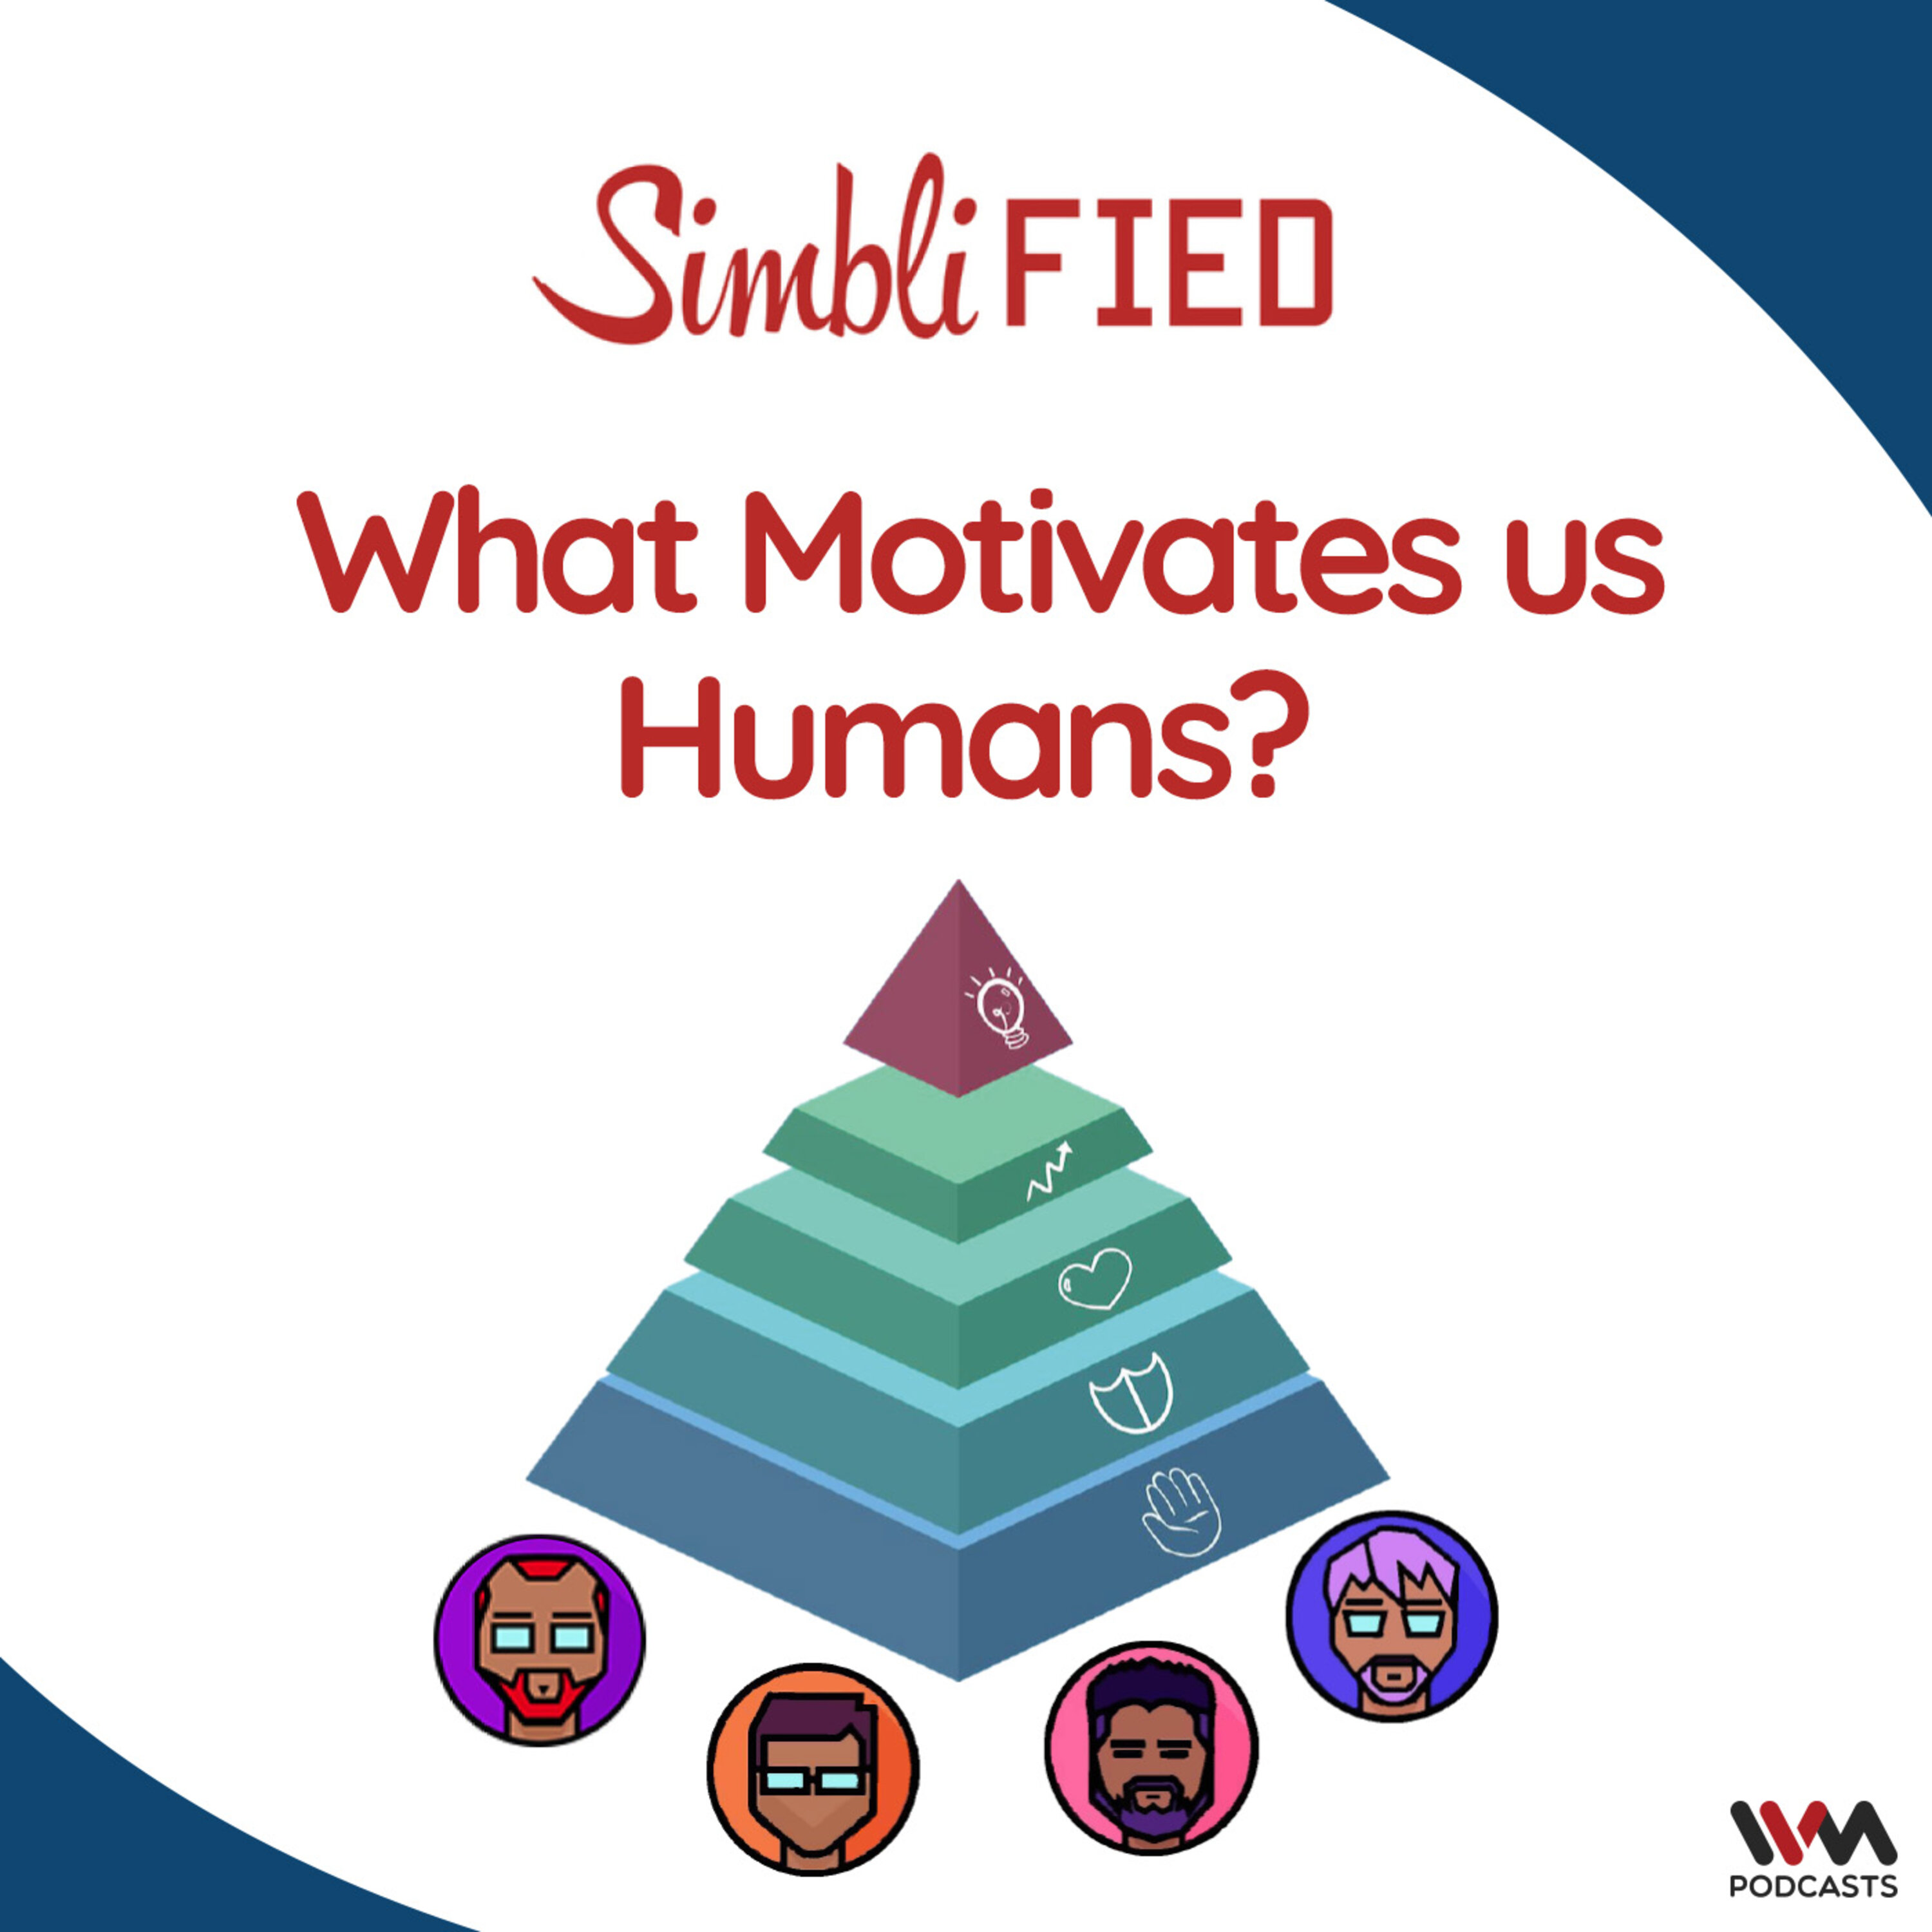 What motivates us humans?